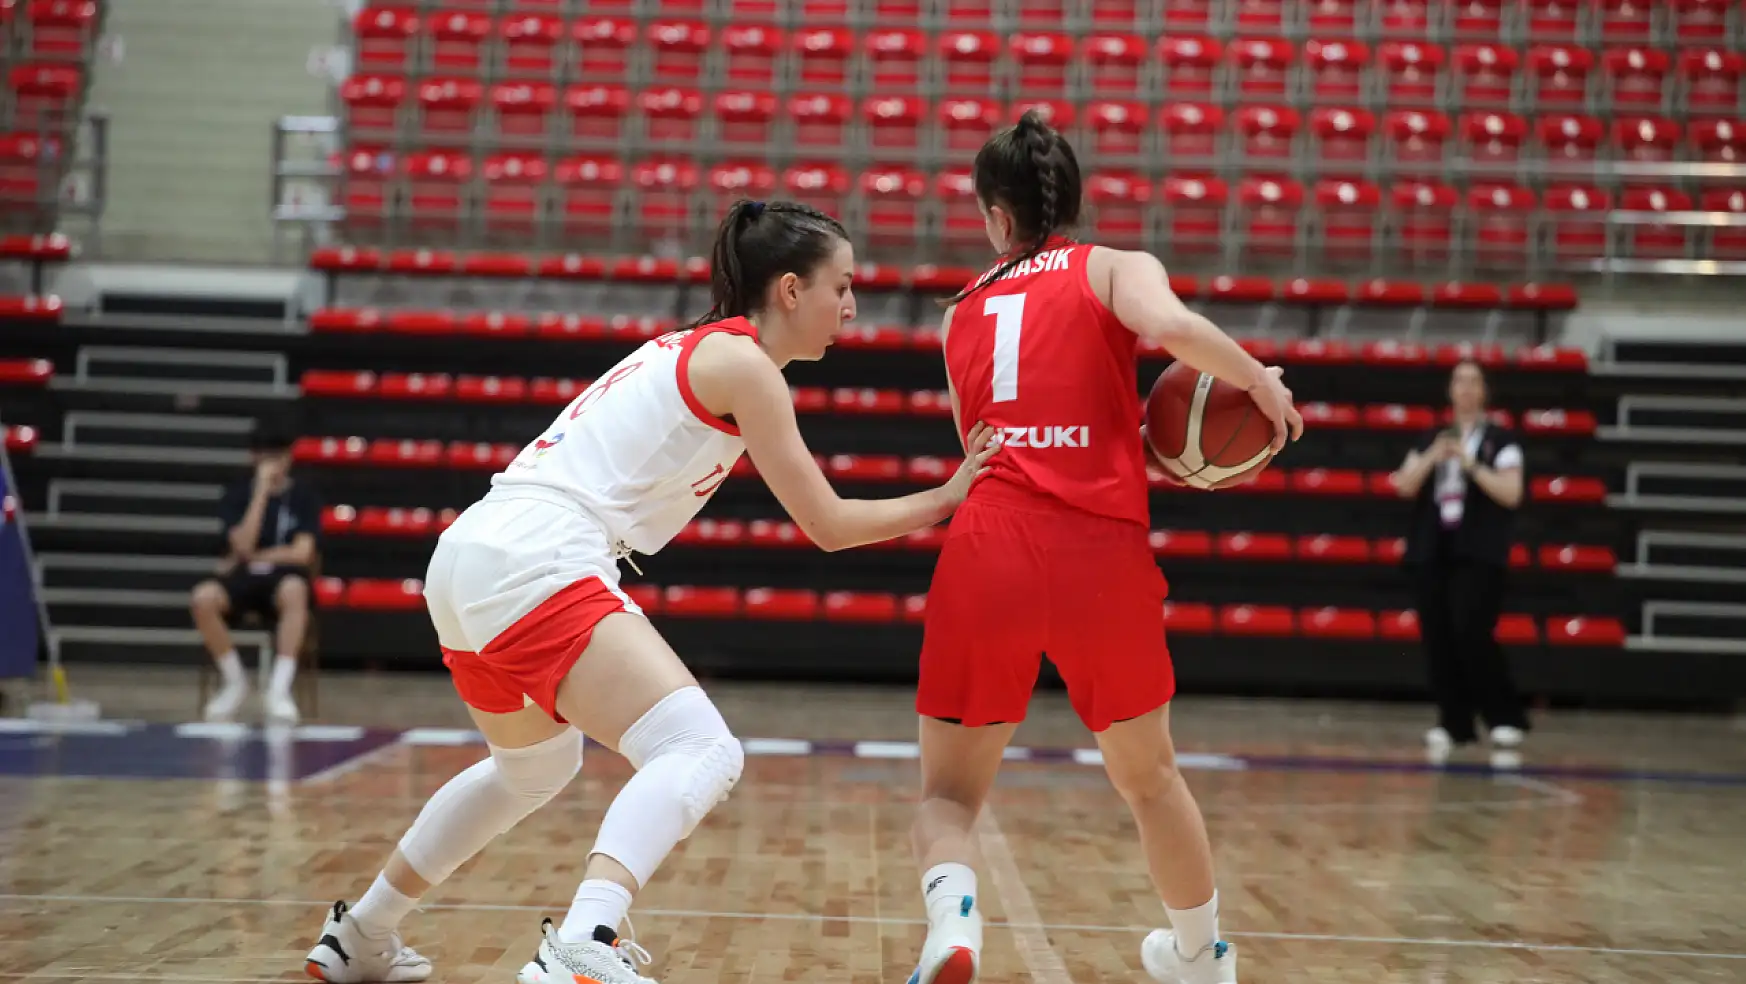 Konya'da Basketbol Milli Takımı'ndan büyük başarı